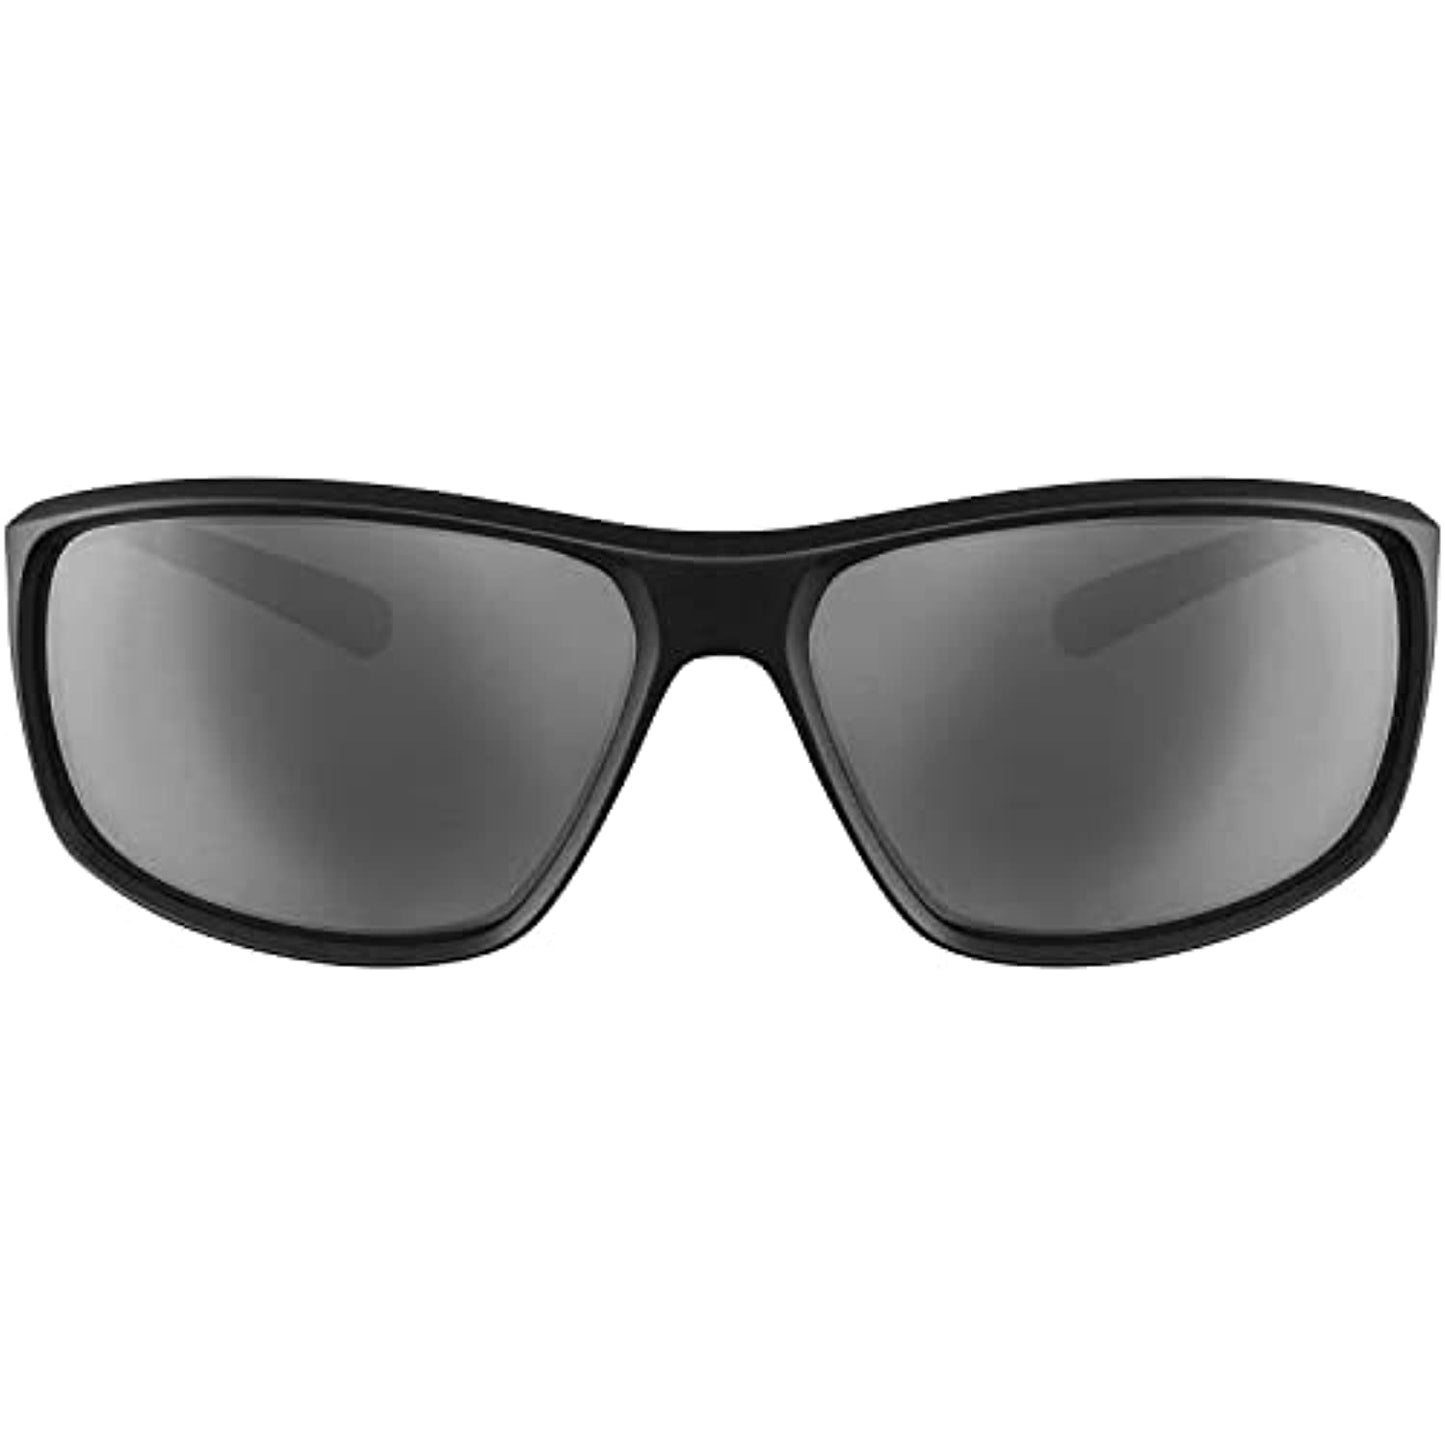 Nike Men Sunglasses EV1134-010 Adrenaline Matte Anthracite/Silver Mirrored Wrap